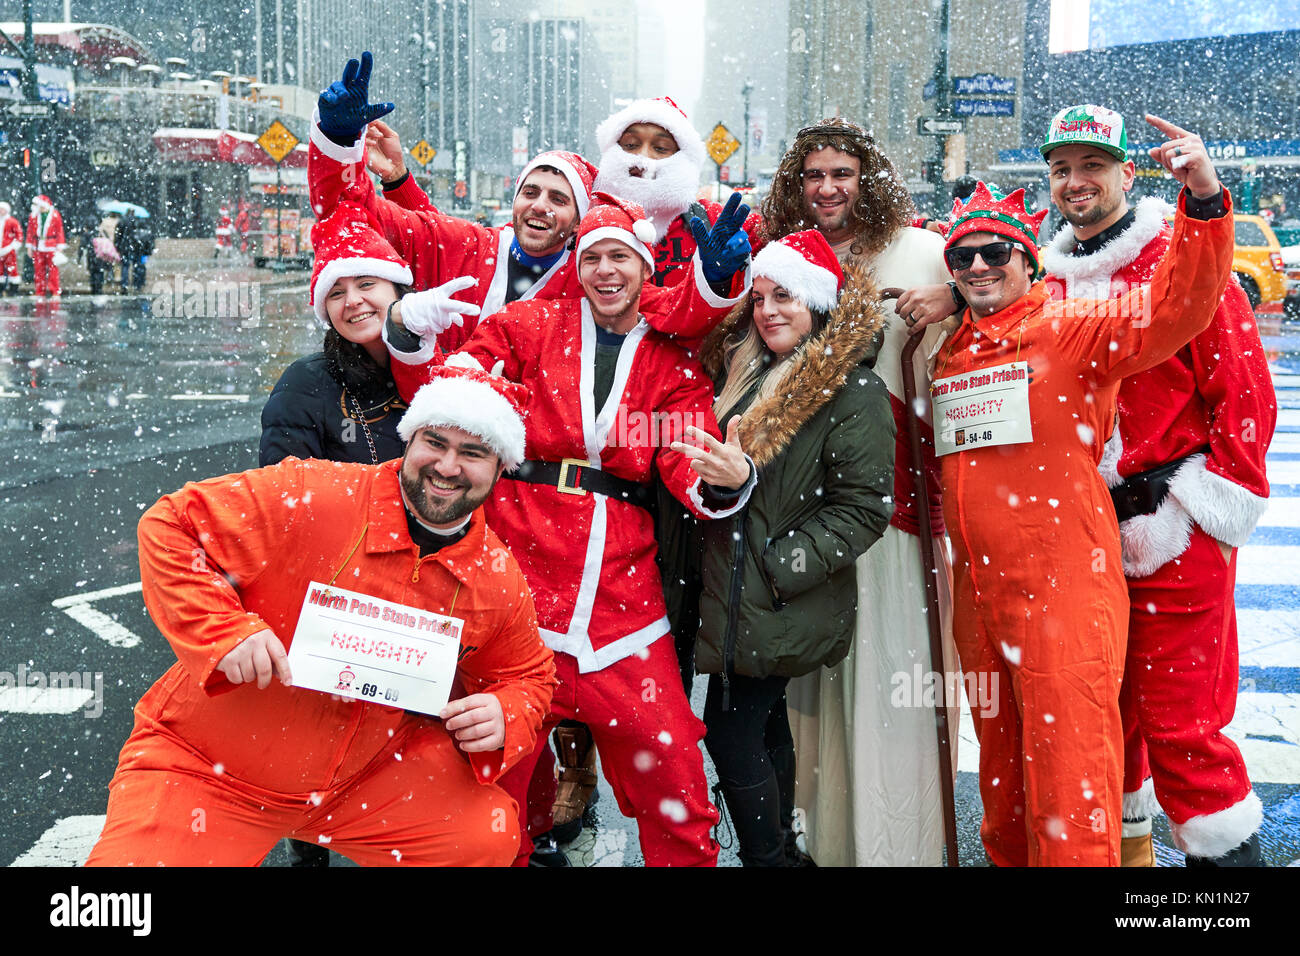 New York, États-Unis, 9 déc 2017. Les gens qui portent des costumes de Noël poser sous une tempête de neige à un antacon "fête" foule rassemblement. Photo par Enrique Shore/Alamy Live News Banque D'Images